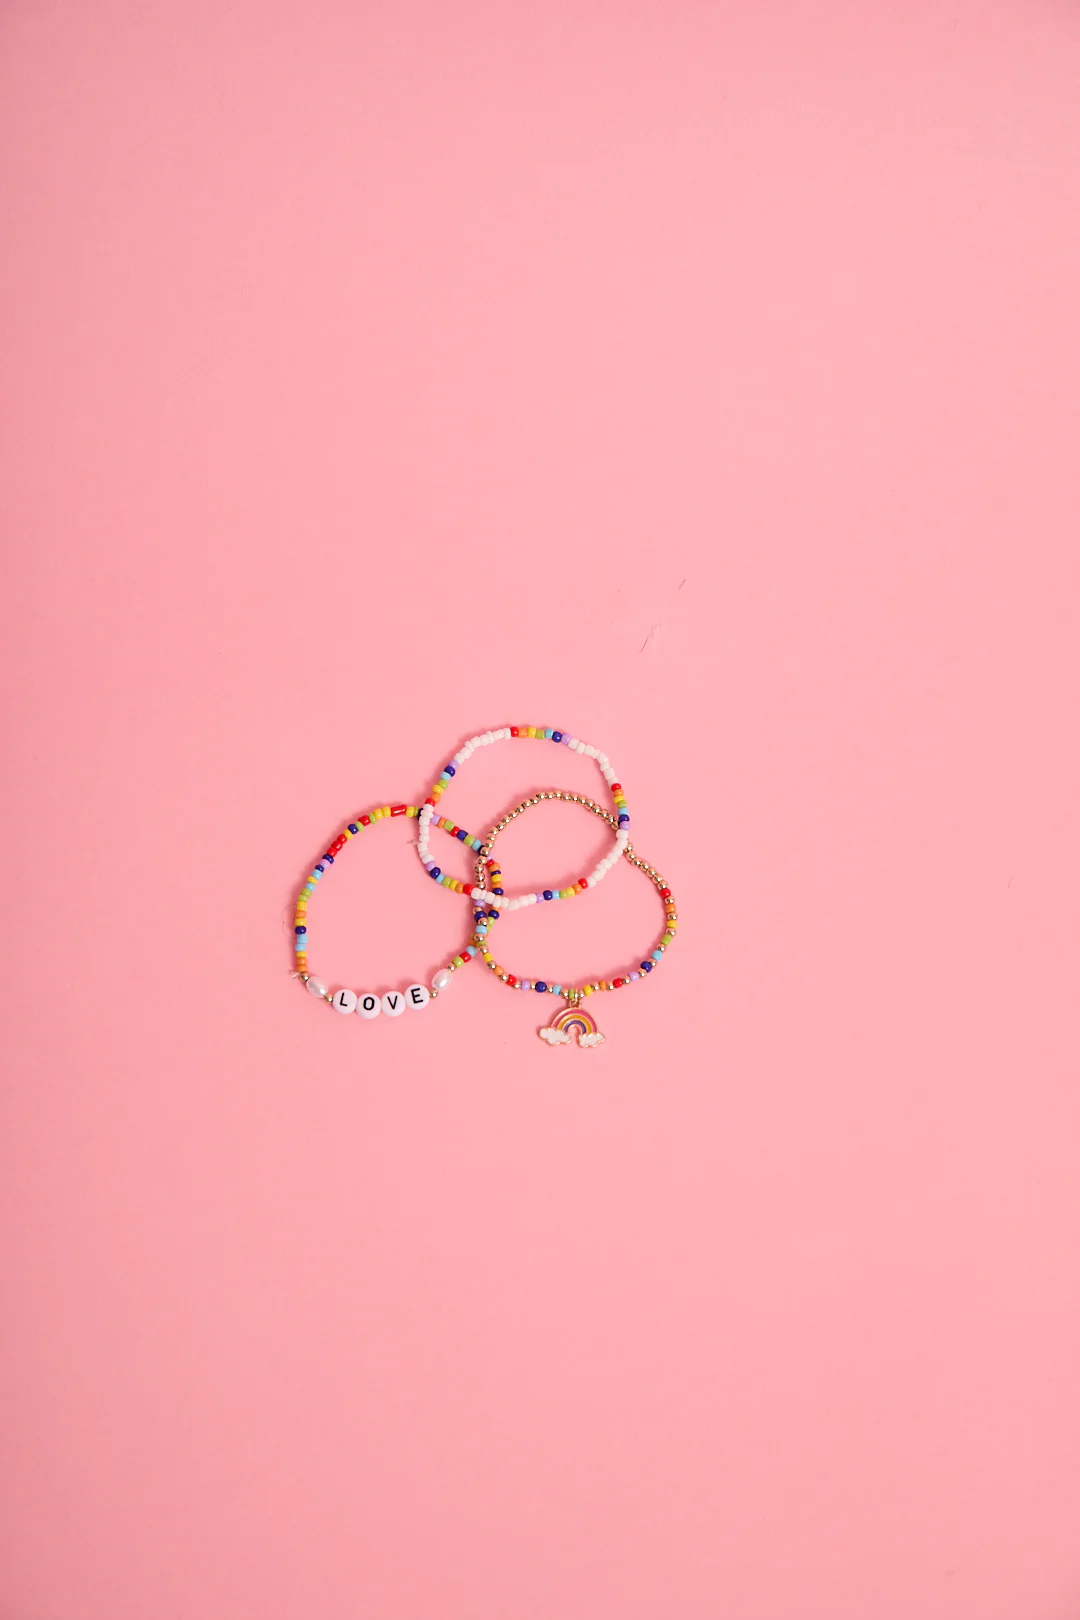 a group of bracelets on a pink background